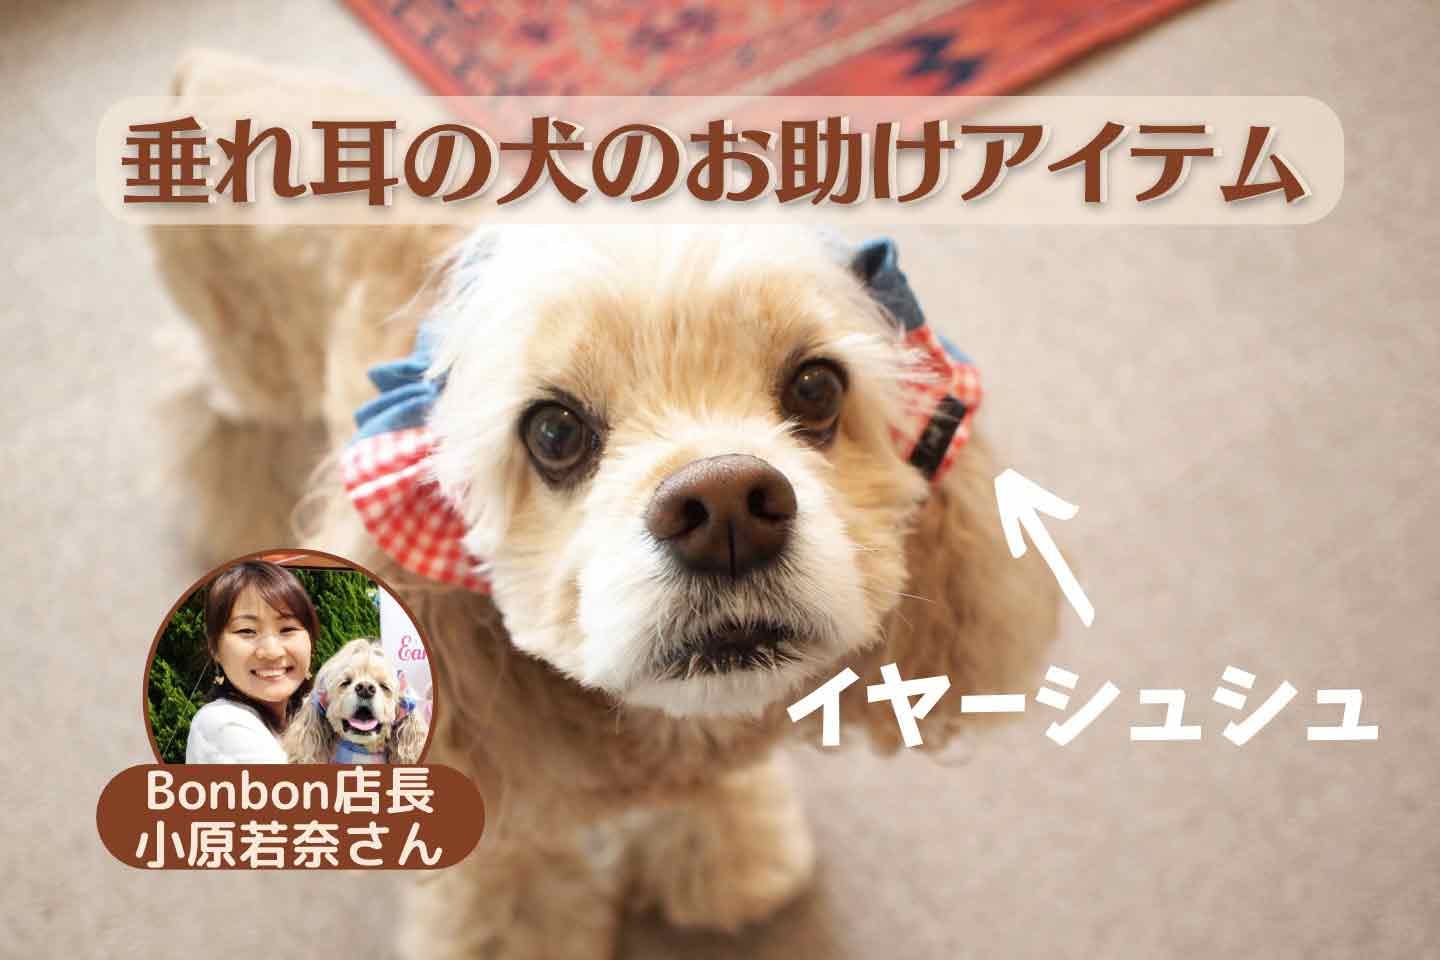 【世界初】垂れ耳の犬の悩みを解消する『イヤーシュシュ』が大人気。発明者・小原若奈さんの愛犬への想い